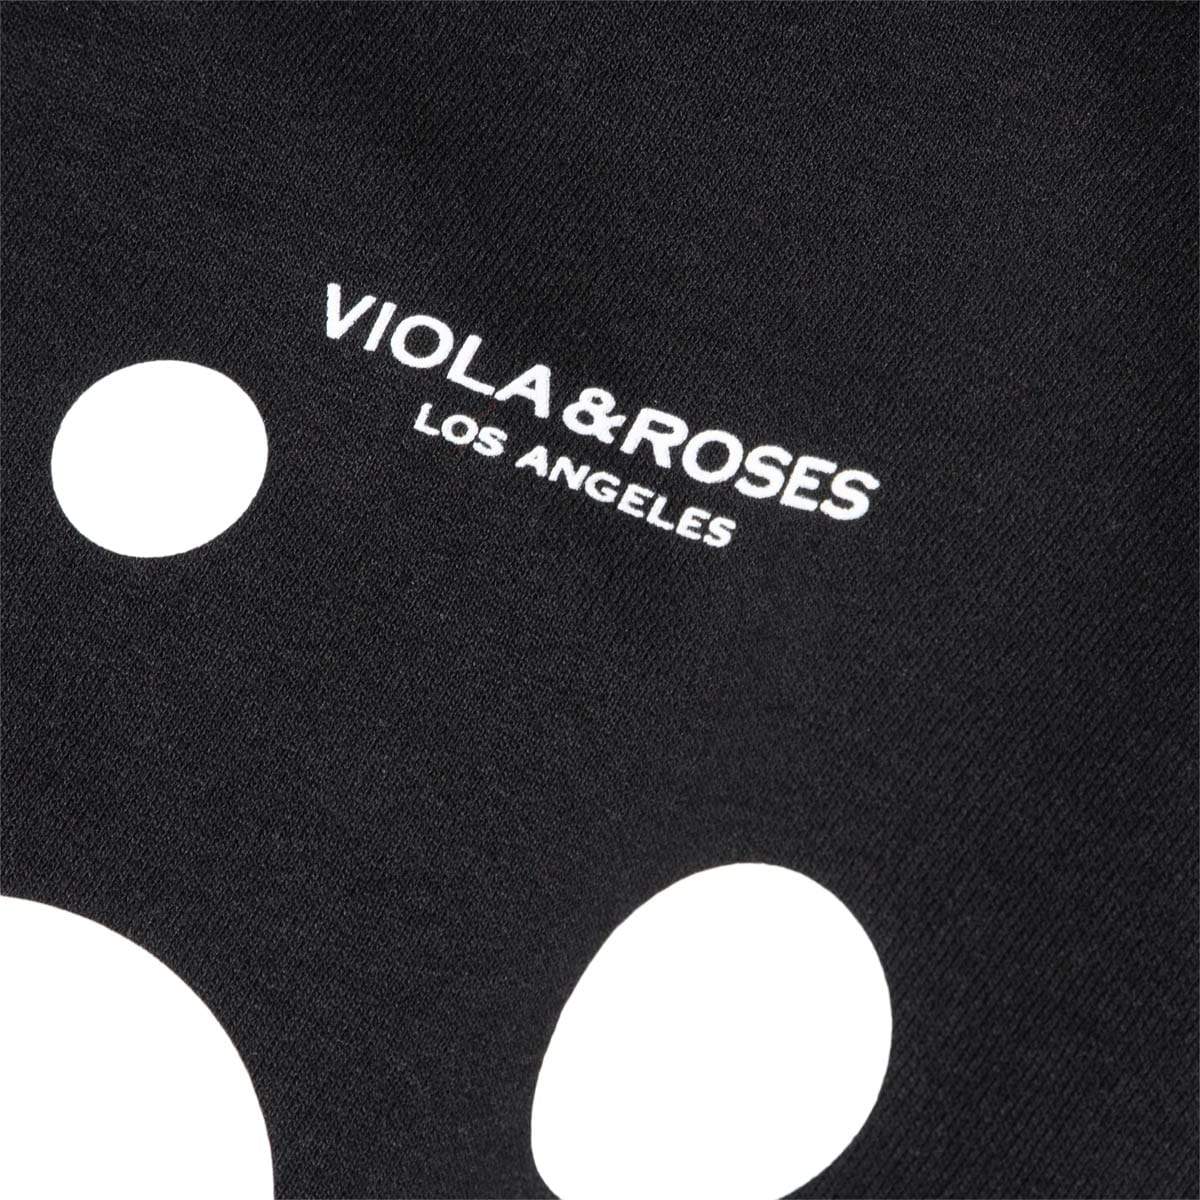 Viola and Roses Hoodies & Sweatshirts DOTS HOODIE